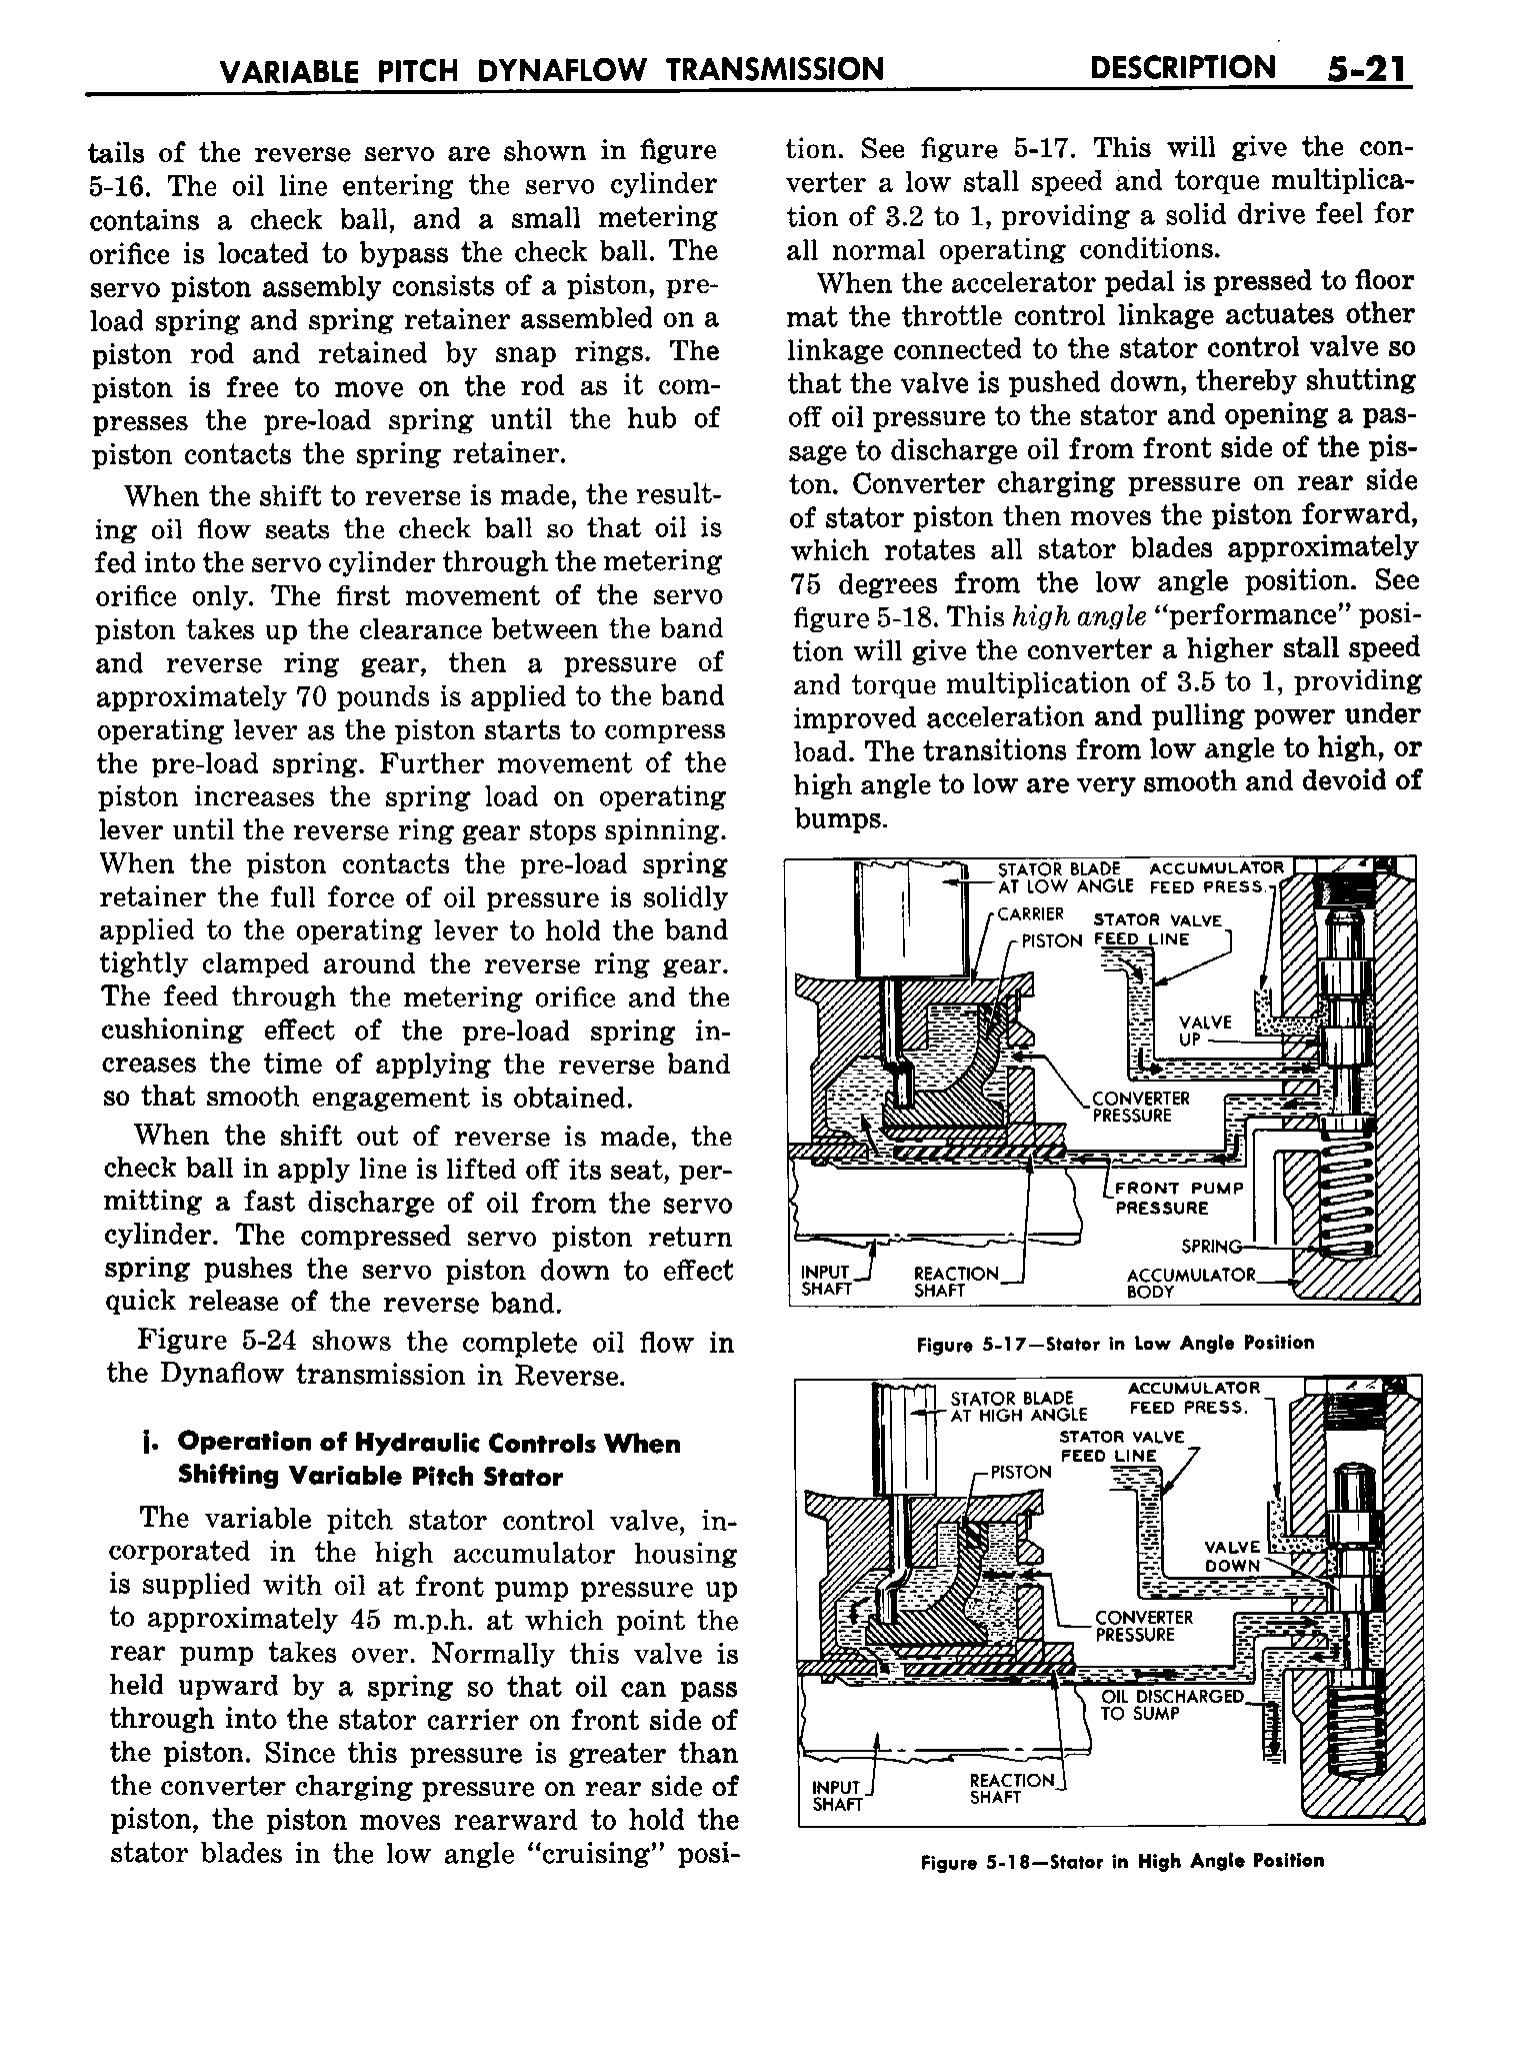 n_06 1958 Buick Shop Manual - Dynaflow_21.jpg